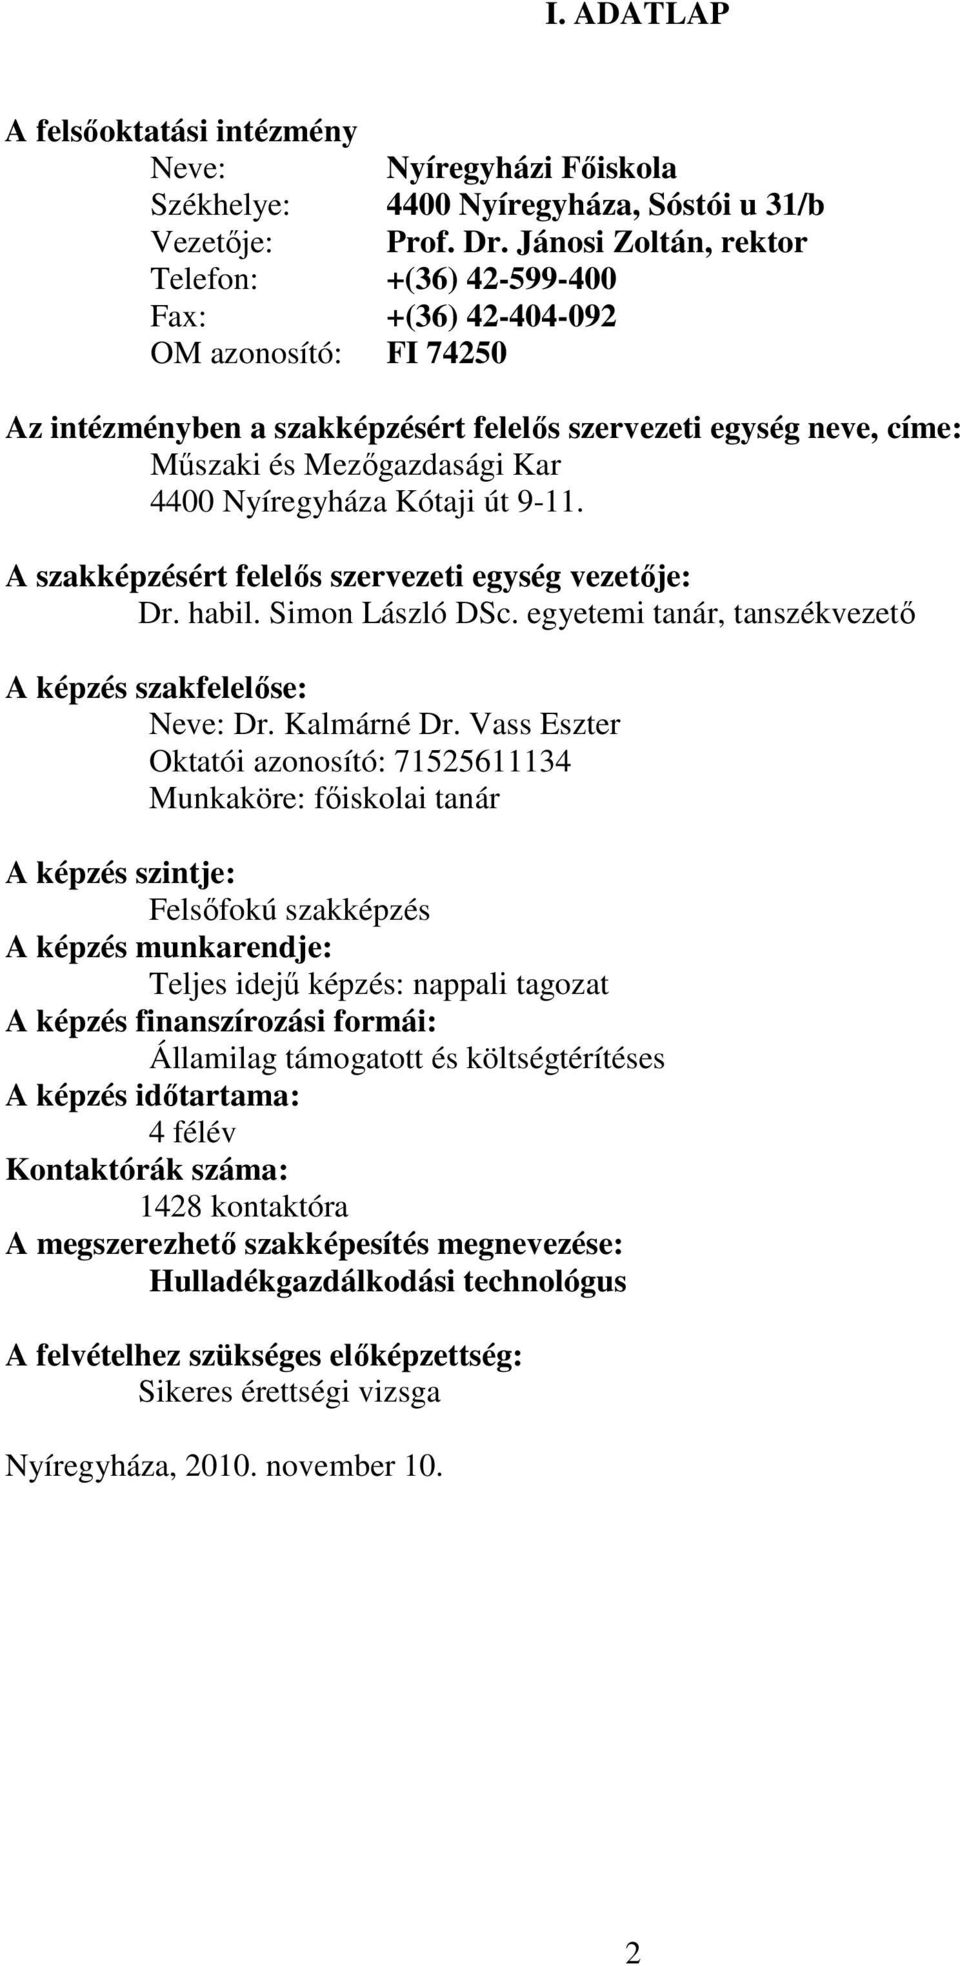 NYÍREGYHÁZI FŐISKOLA Műszaki és Mezőgazdasági Kar - PDF Free Download